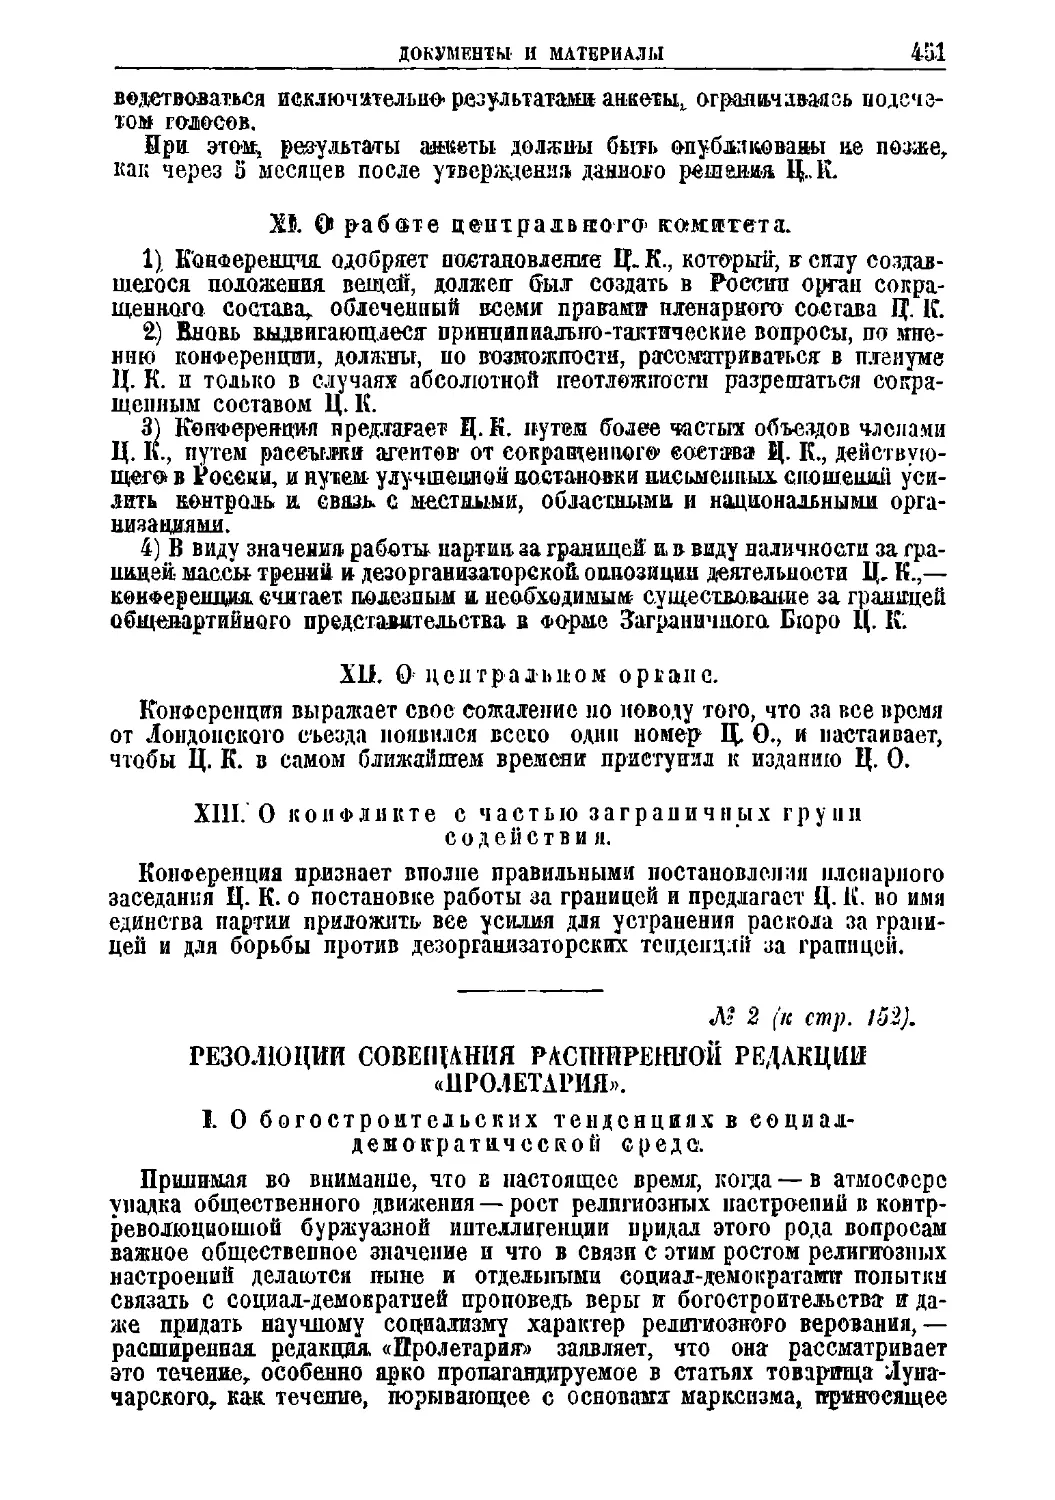 № 2. Резолюции Совещания расширенной редакции «Пролетария»